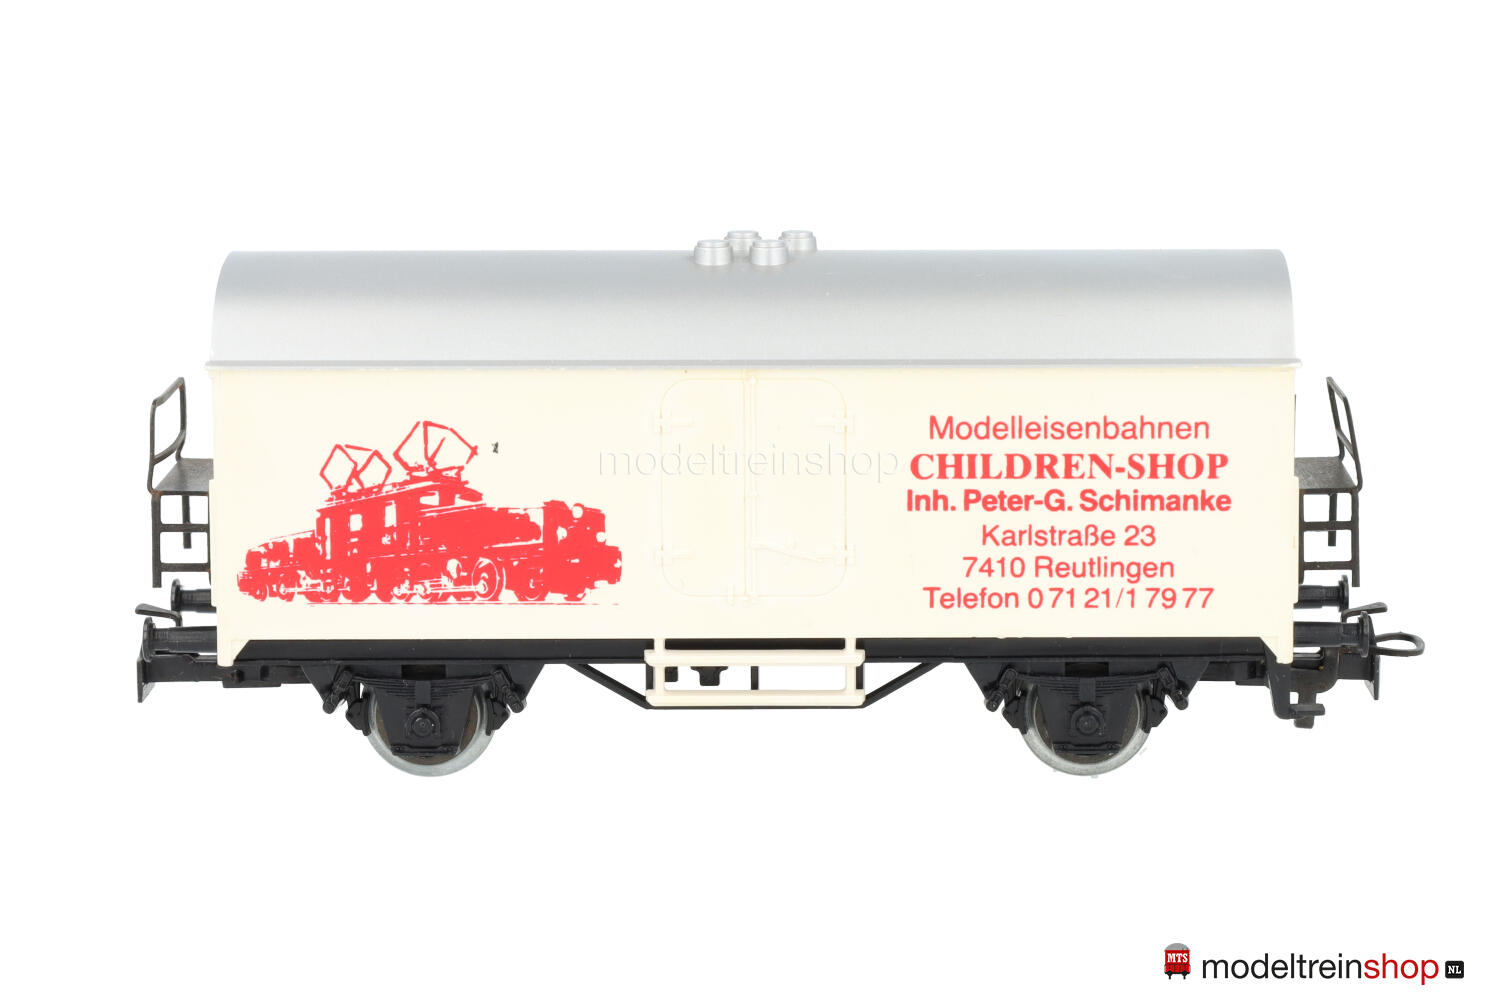 Marklin H0 4415 Koelwagen Modelleisenbahnen Childeren-Shop - Modeltreinshop